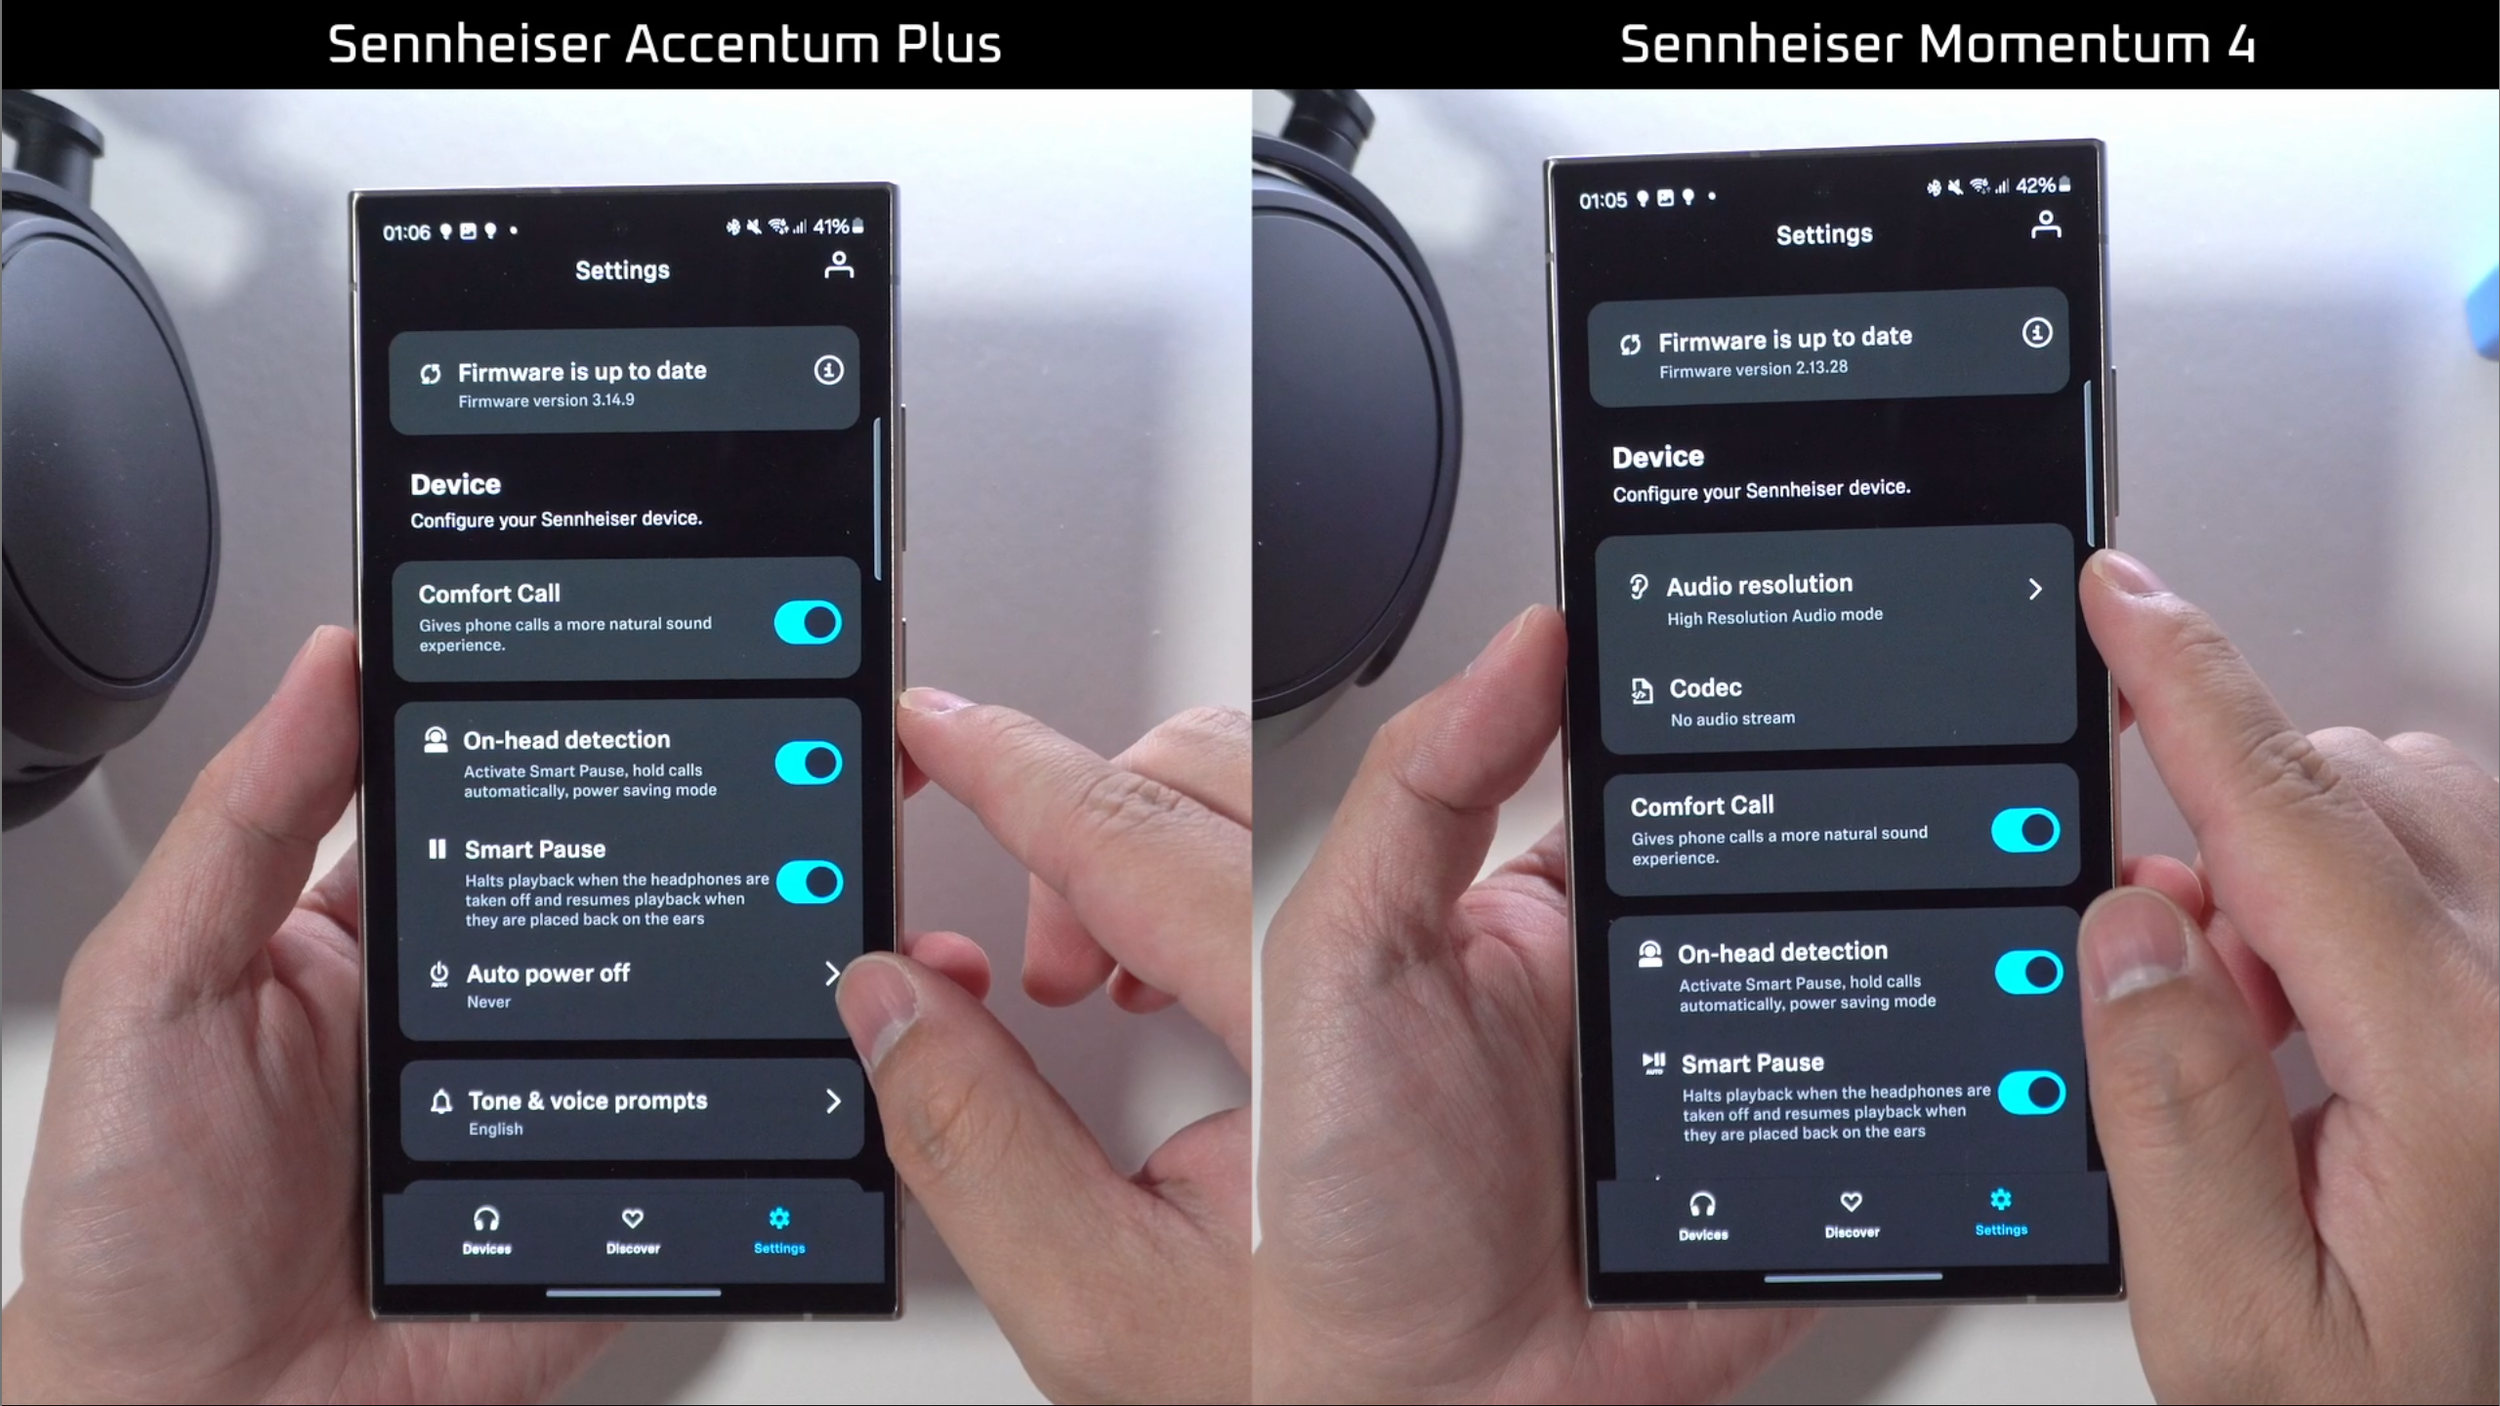 Sennheiser Momentum 4 vs Accentum Plus app (2).png